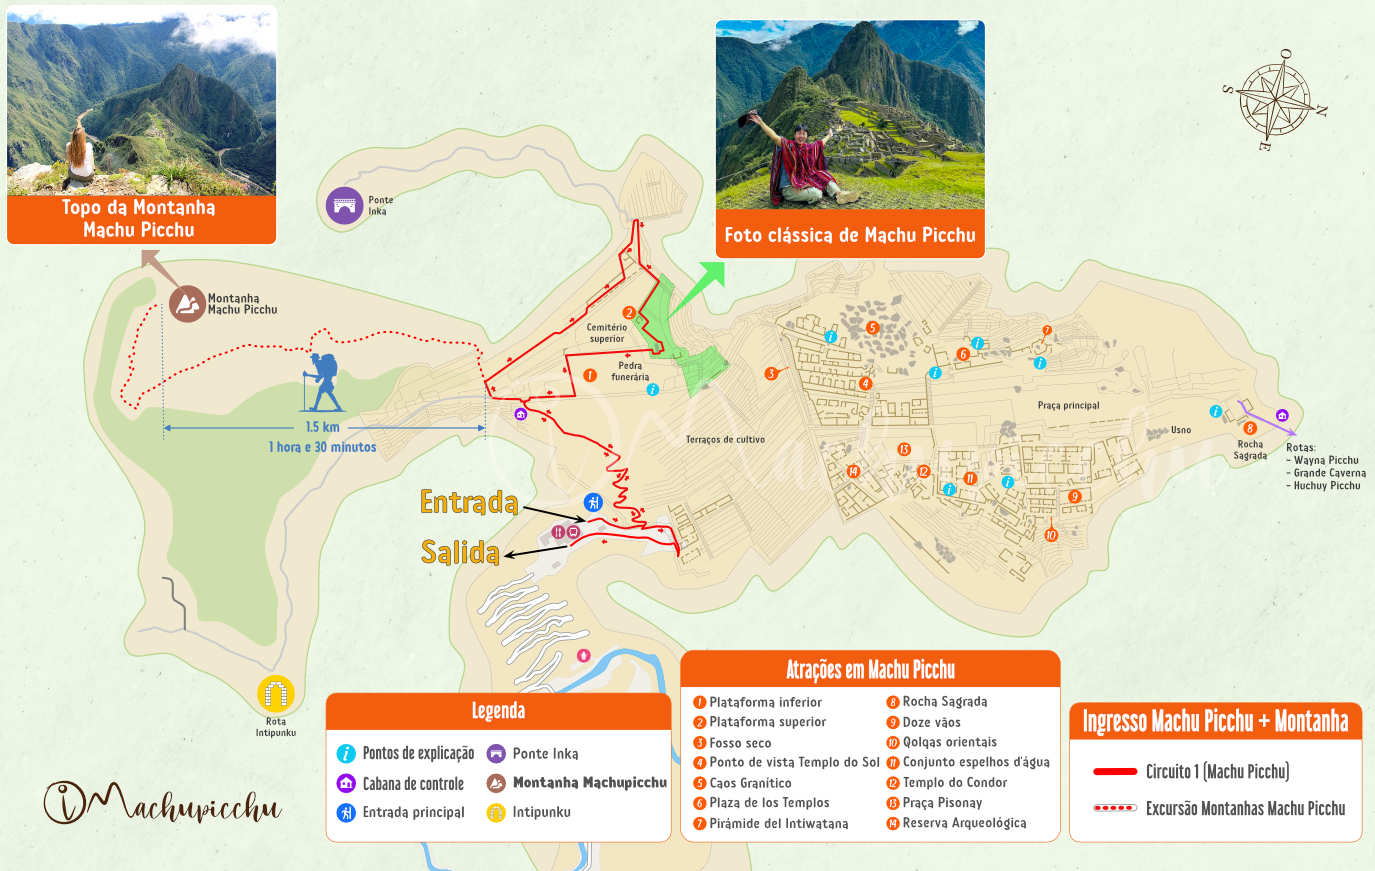 Mapa do circuito Machu Picchu + Montanha